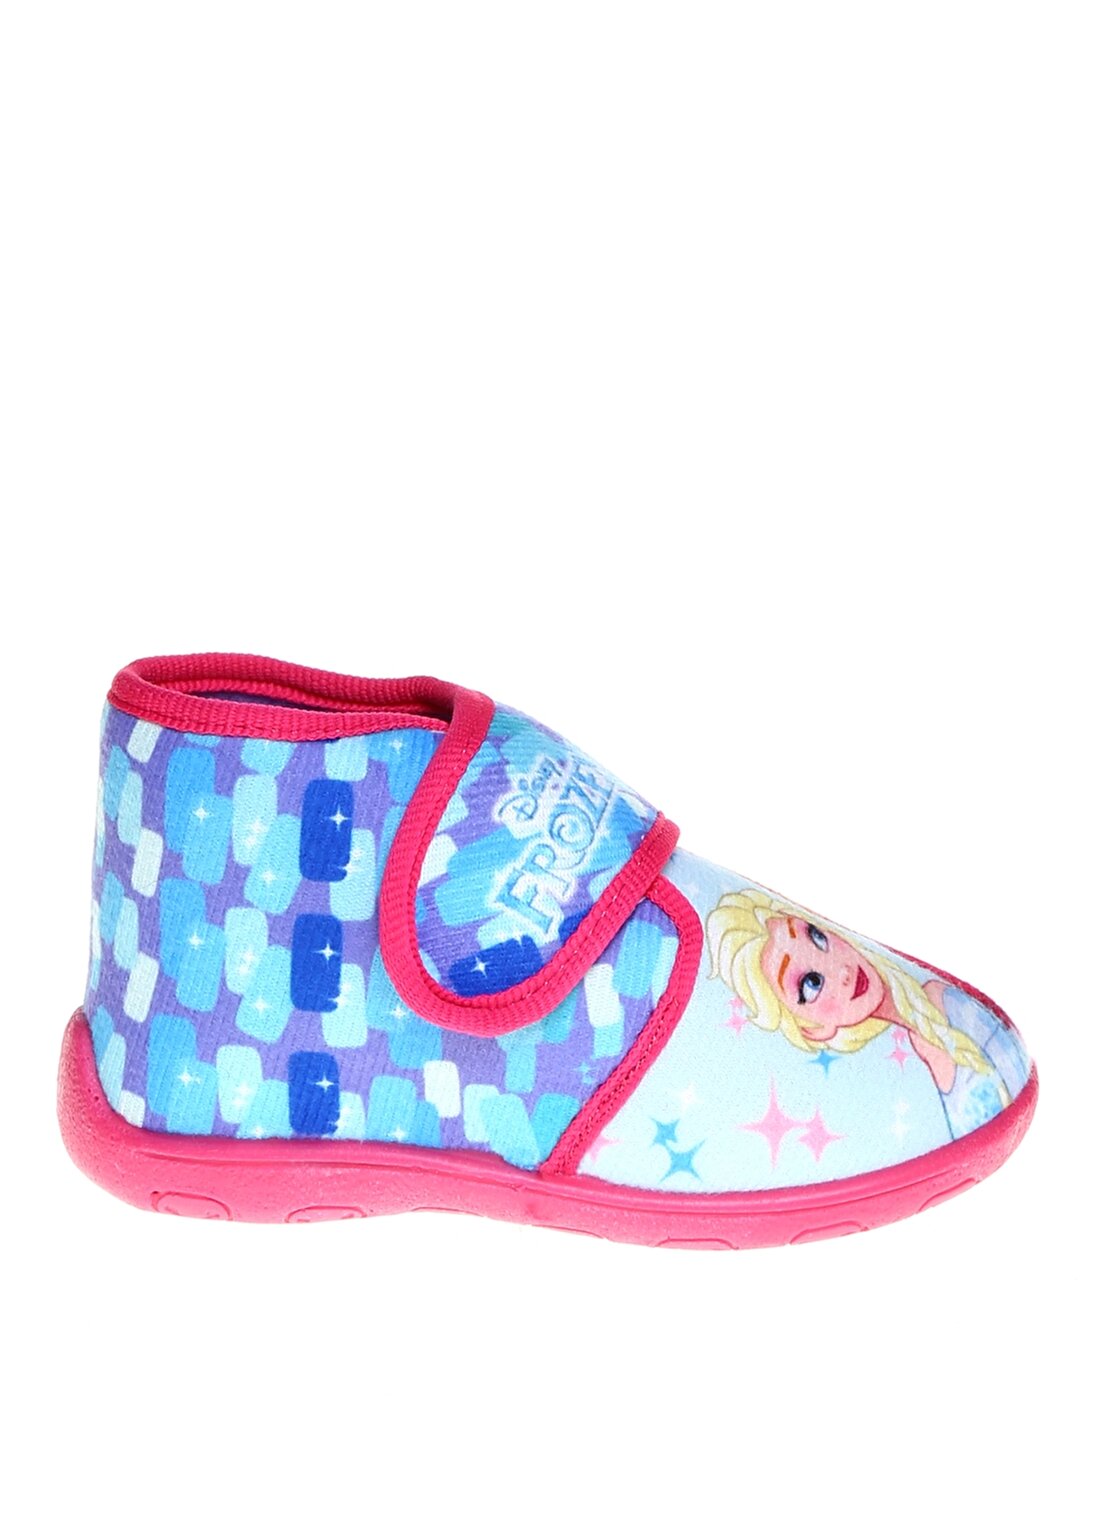 Gigi Cırt Cırtlı Disney Frozen Elsa Anna Baskılı Pembe Kız Çocuk Ev Ayakkabısı